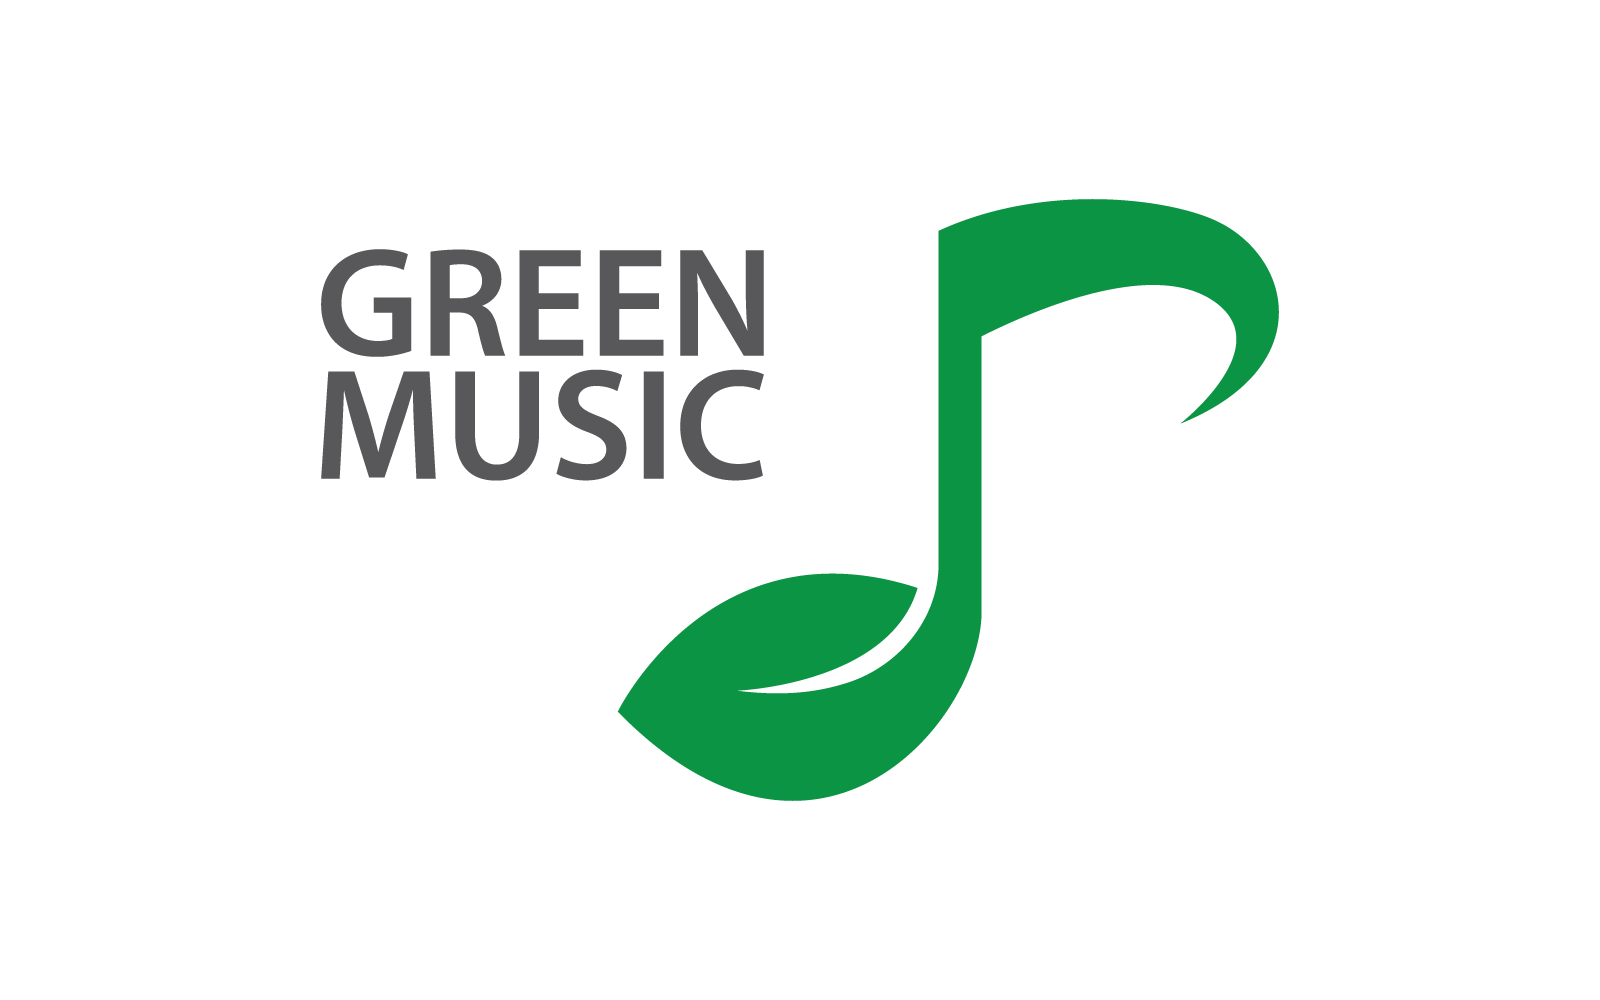 Leaf &amp;amp; Music logo illustration vector design